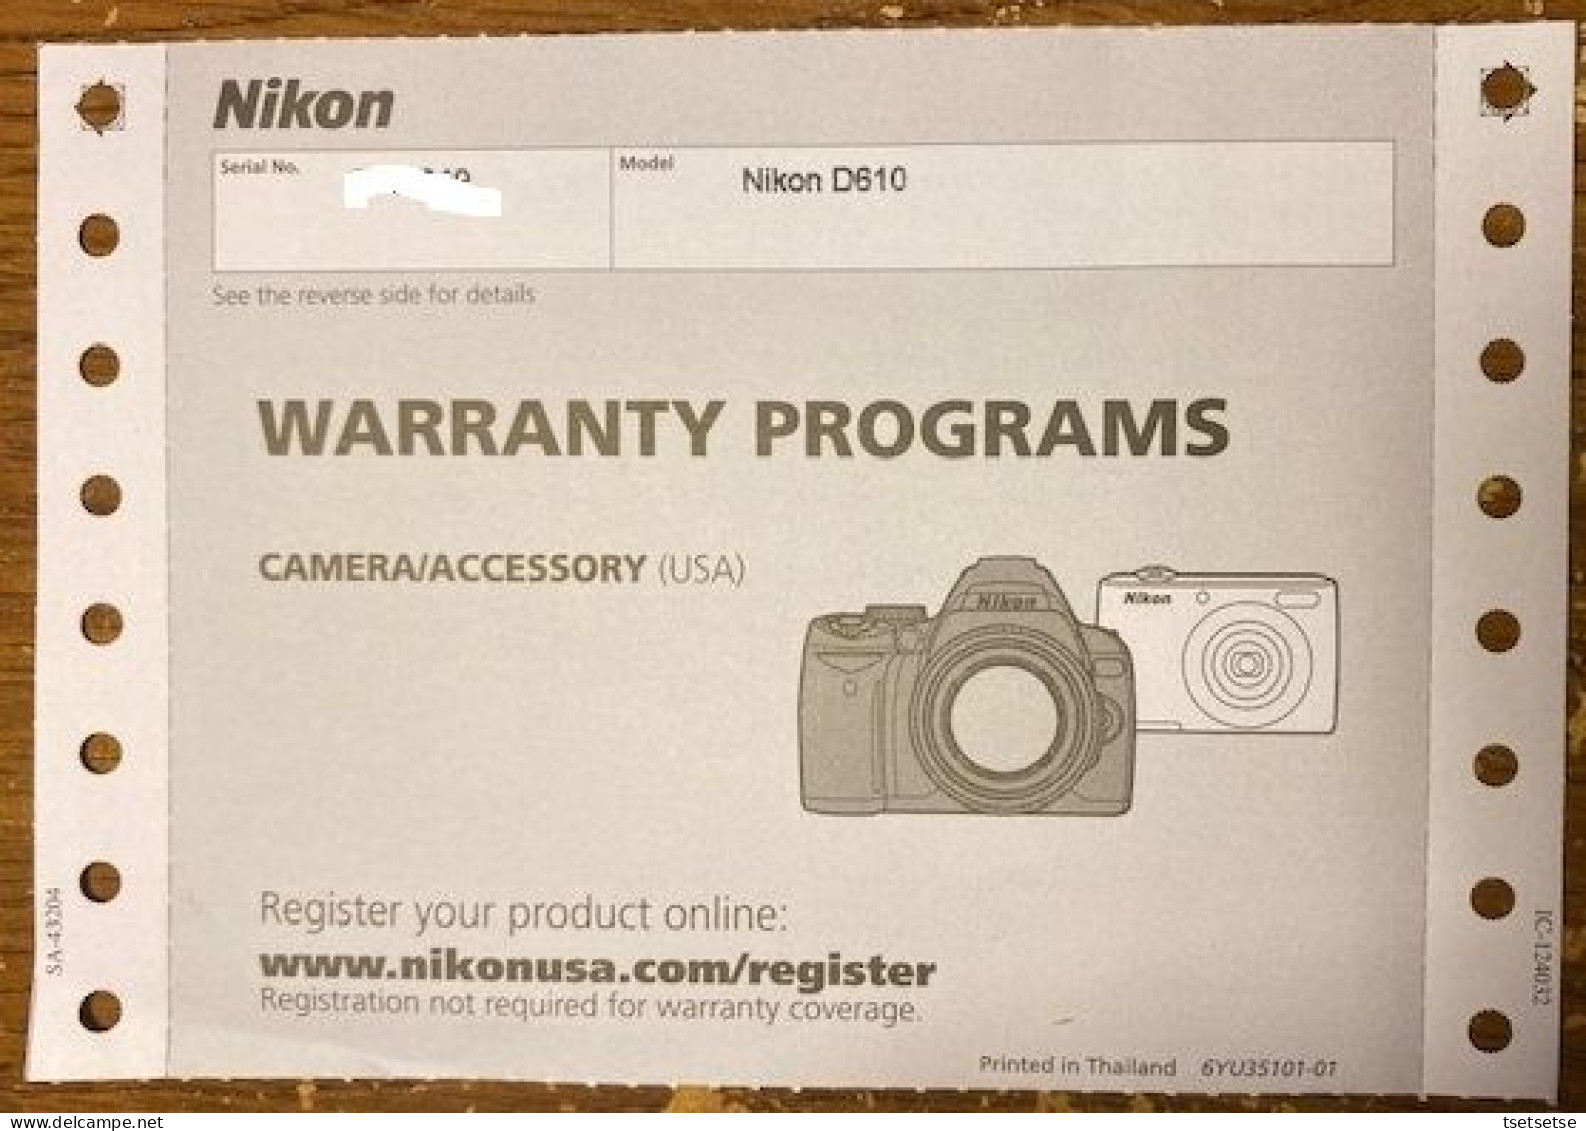 Your choice $2,032 or $1,099? "Brand NEW" Nikon Full-frame FX D610 DSLR camera kit